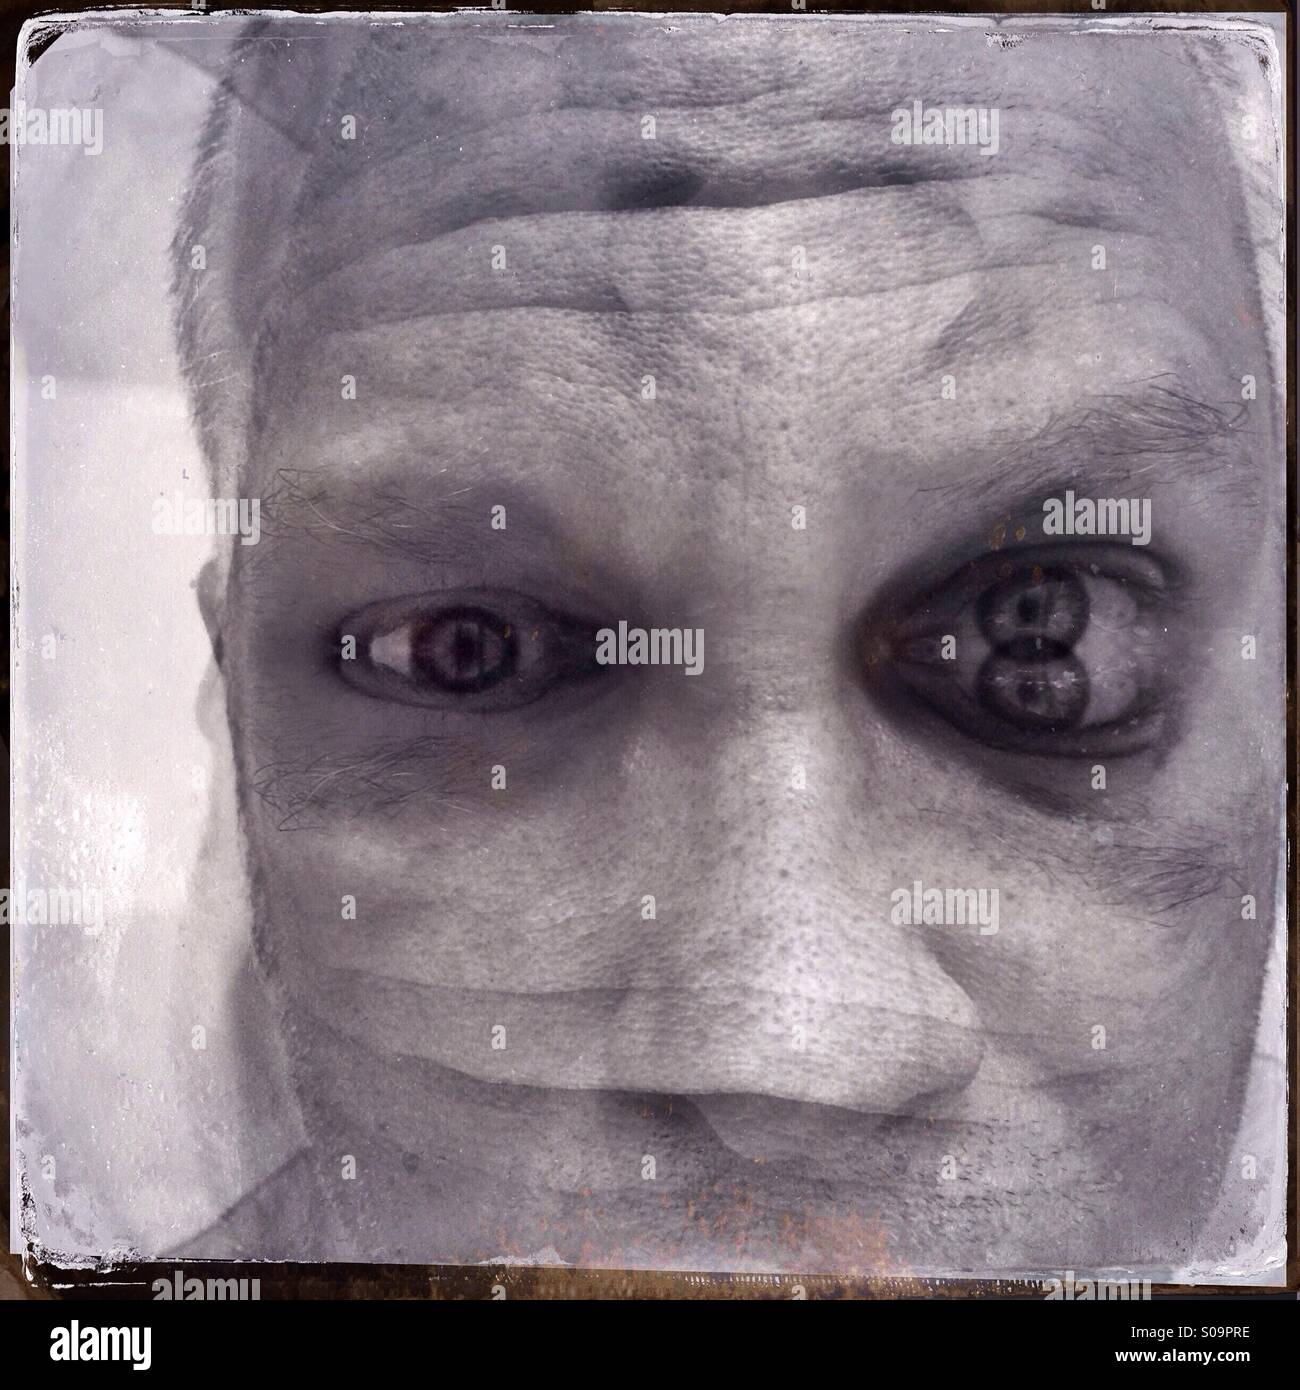 Surreal schwarz / weiss Portrait eines Mannes, doppelte ausgesetzt und reflektiert, so dass seine Gesichtszüge verzerrt sind. Stockfoto